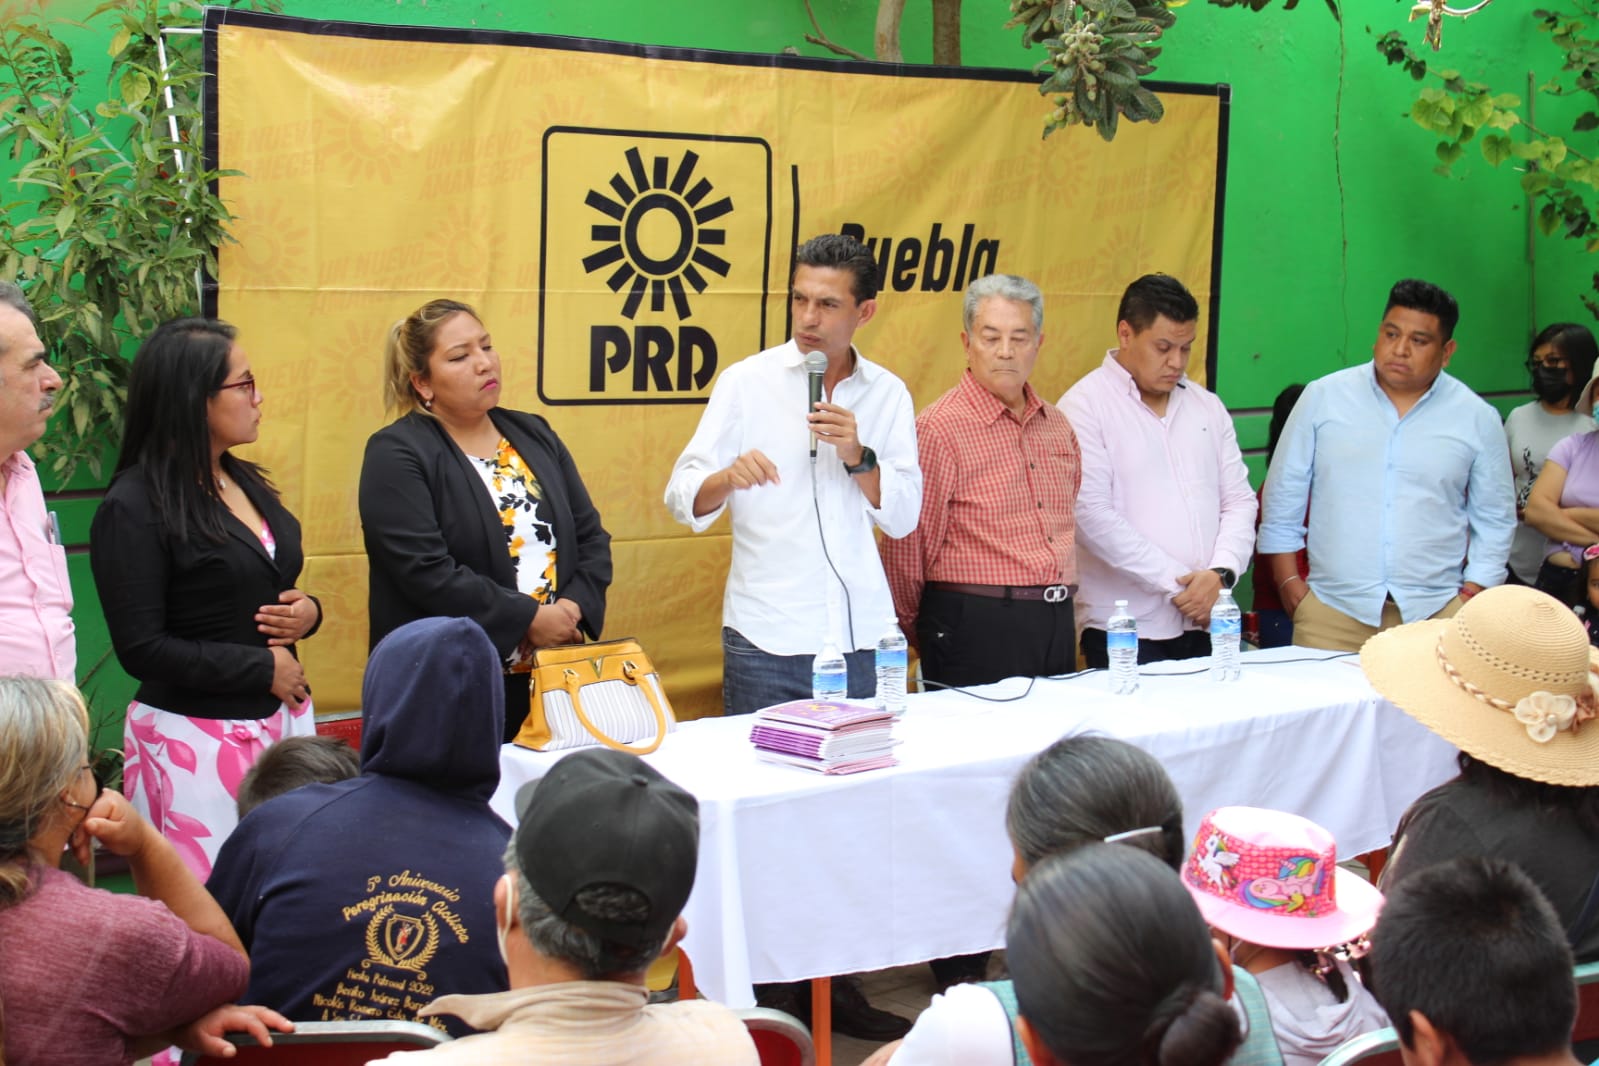 El PRD instalará coordinadoras en los 217 municipios de Puebla: Carlos Martínez Amador